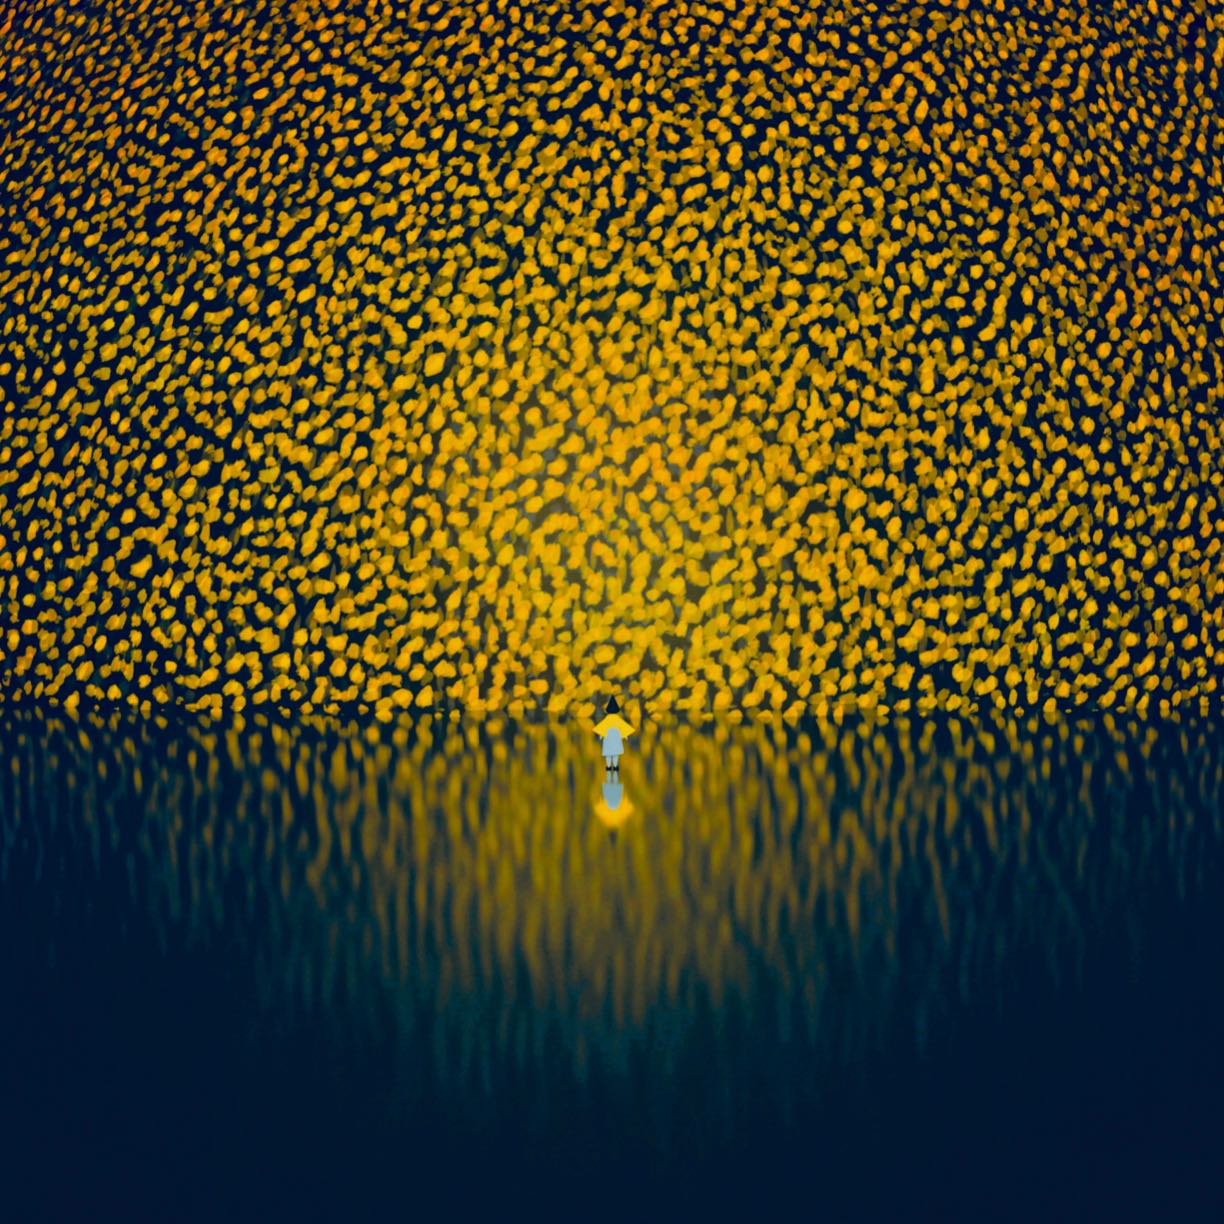 Atsushigraphのデジタルアート作品「Dream Light」の画像です。